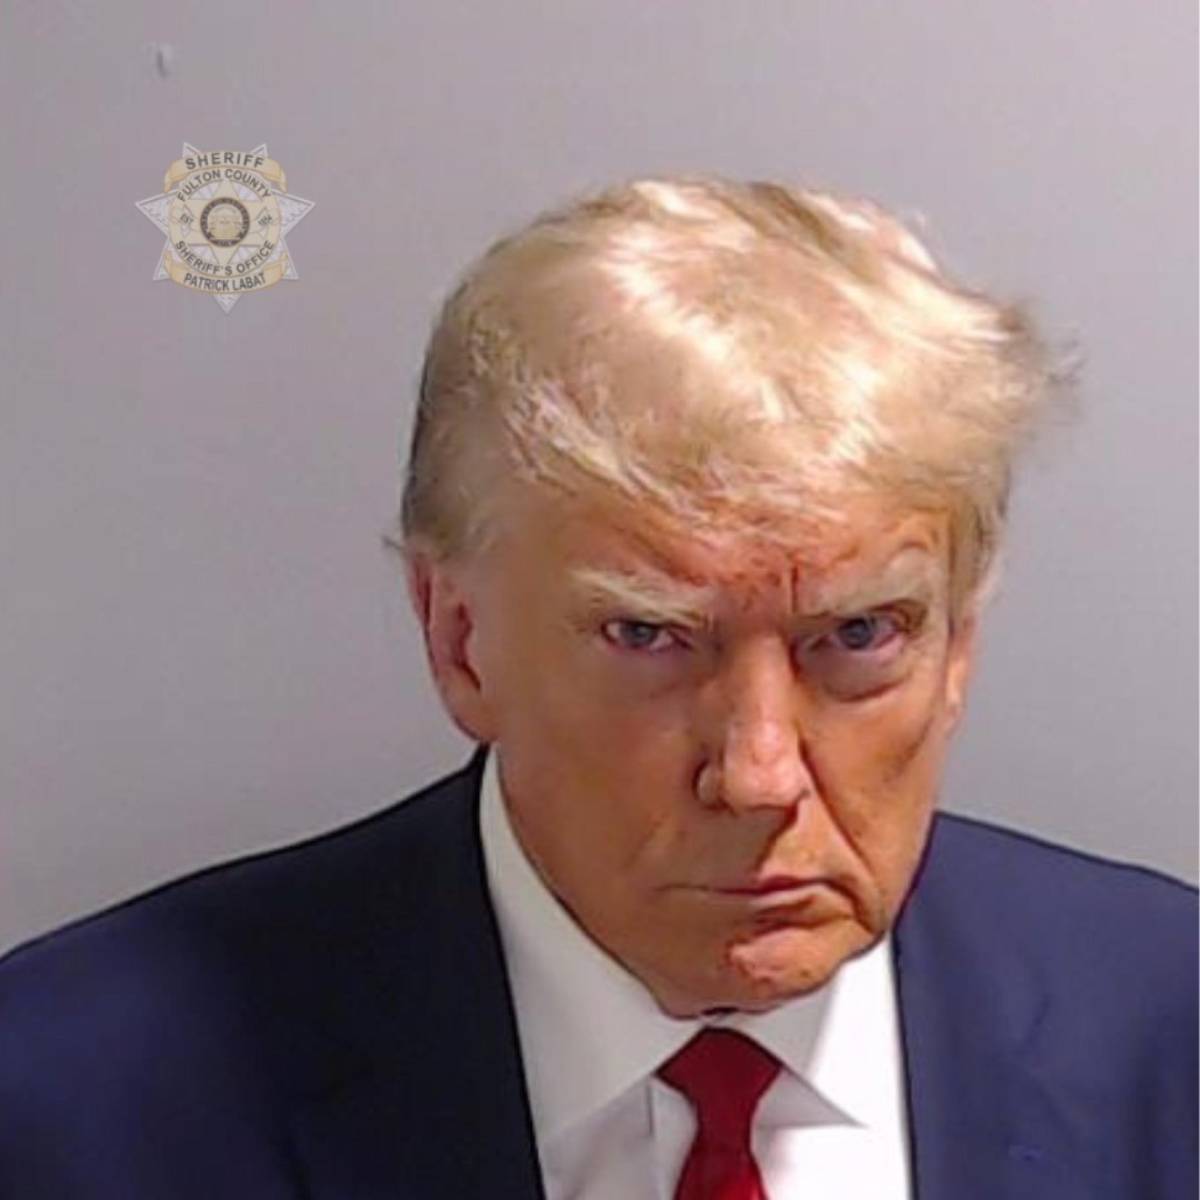 L'arresto di Trump è già una sfida: "Non ho fatto nulla di sbagliato"